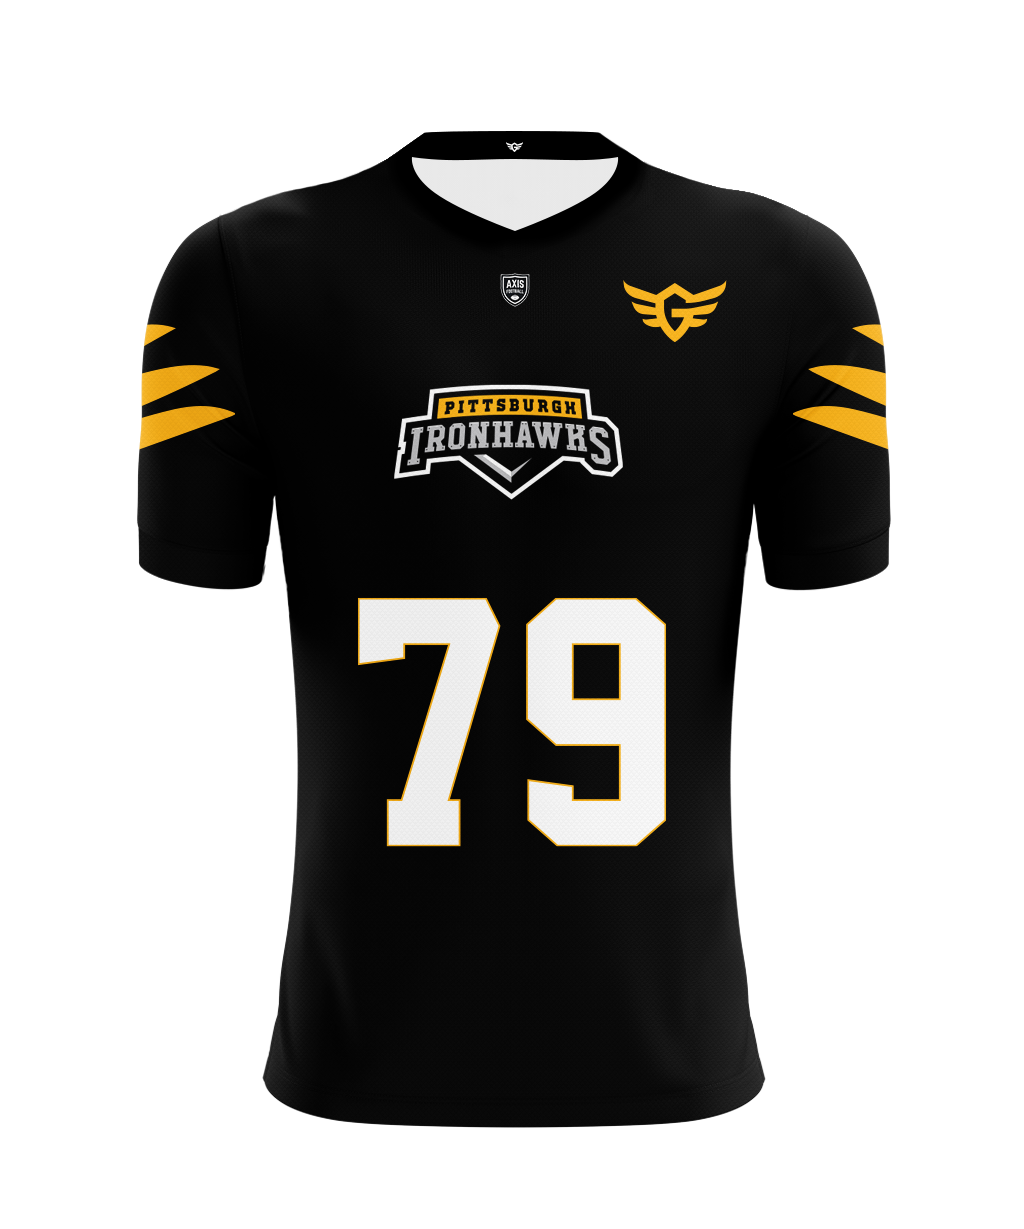 Pittsburgh Ironhawks Home Jersey